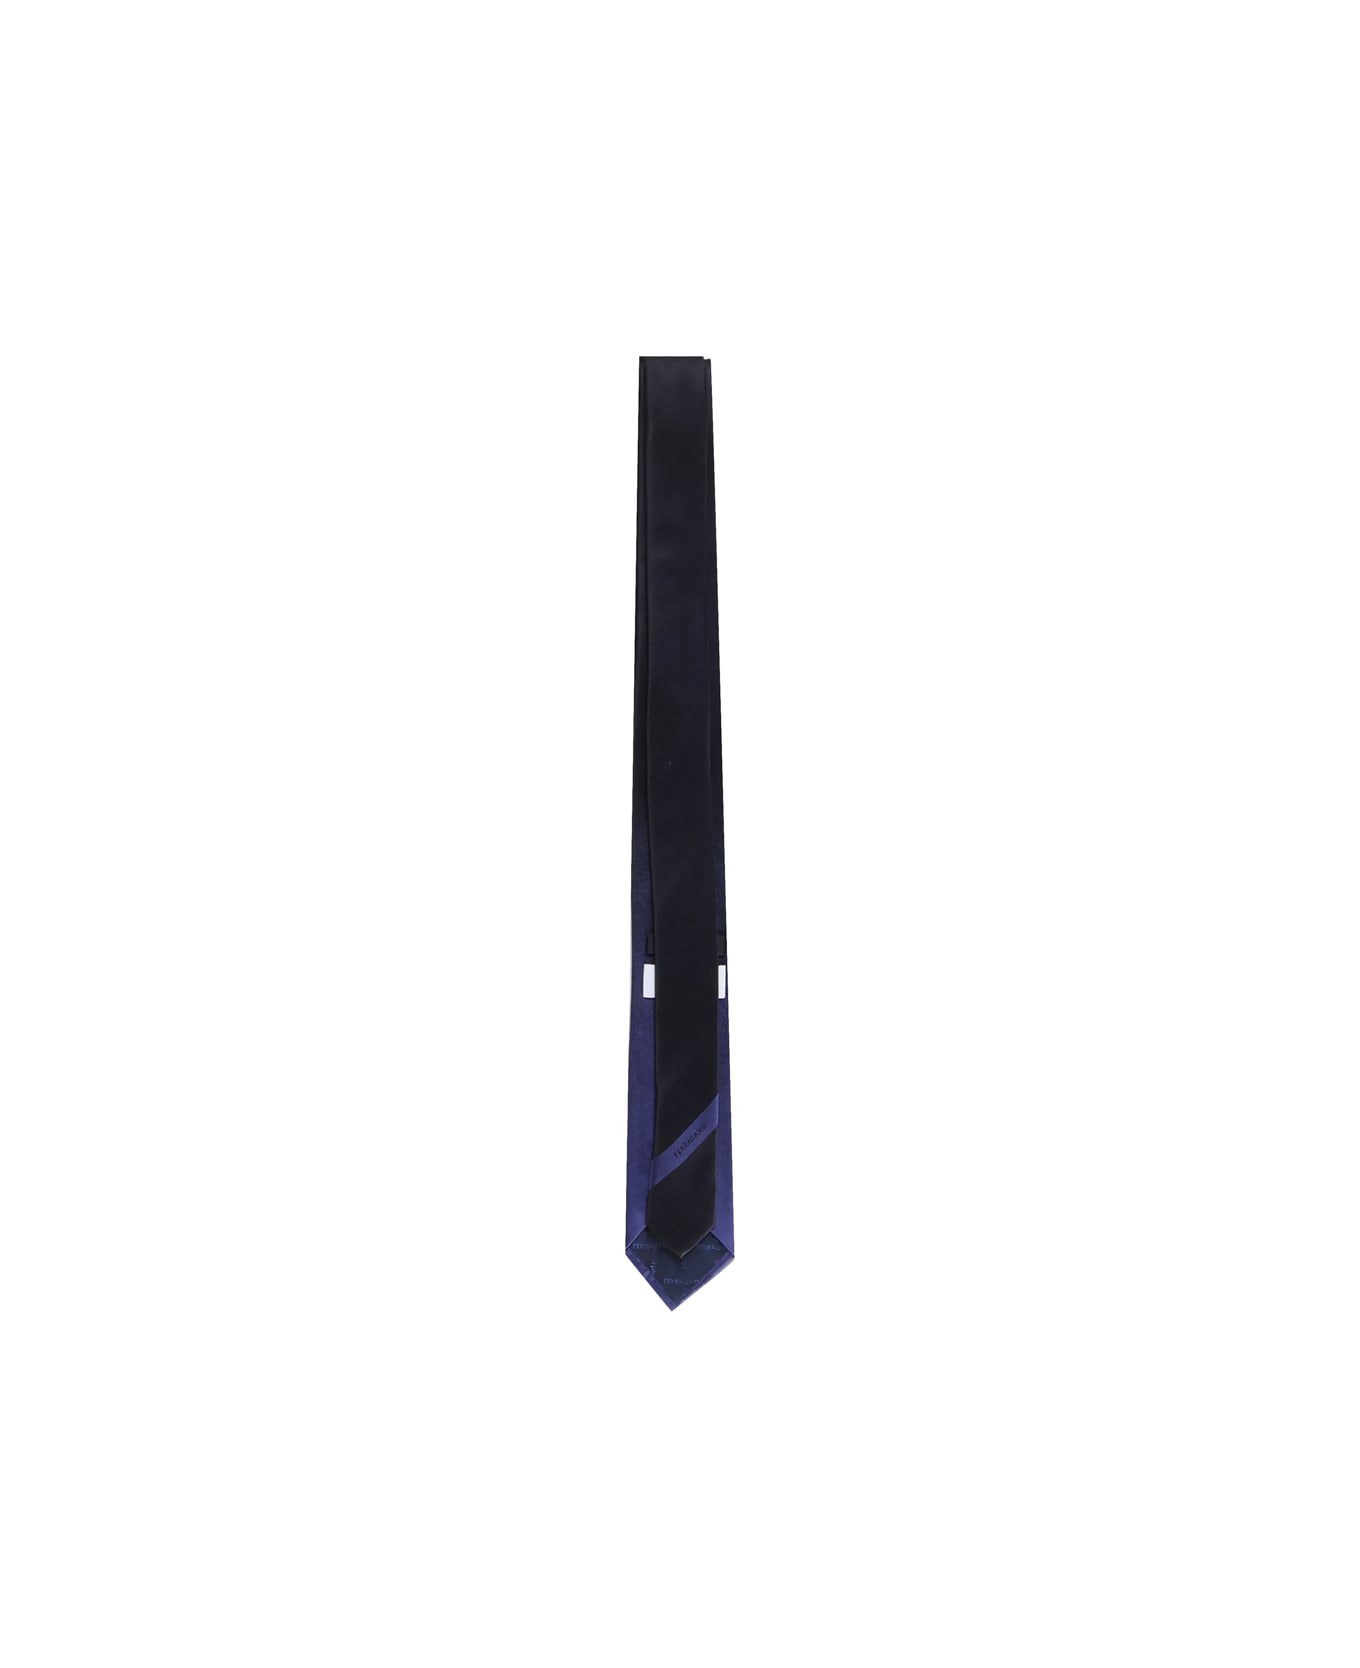 Ferragamo Tie With Shaded Effect - Black blu